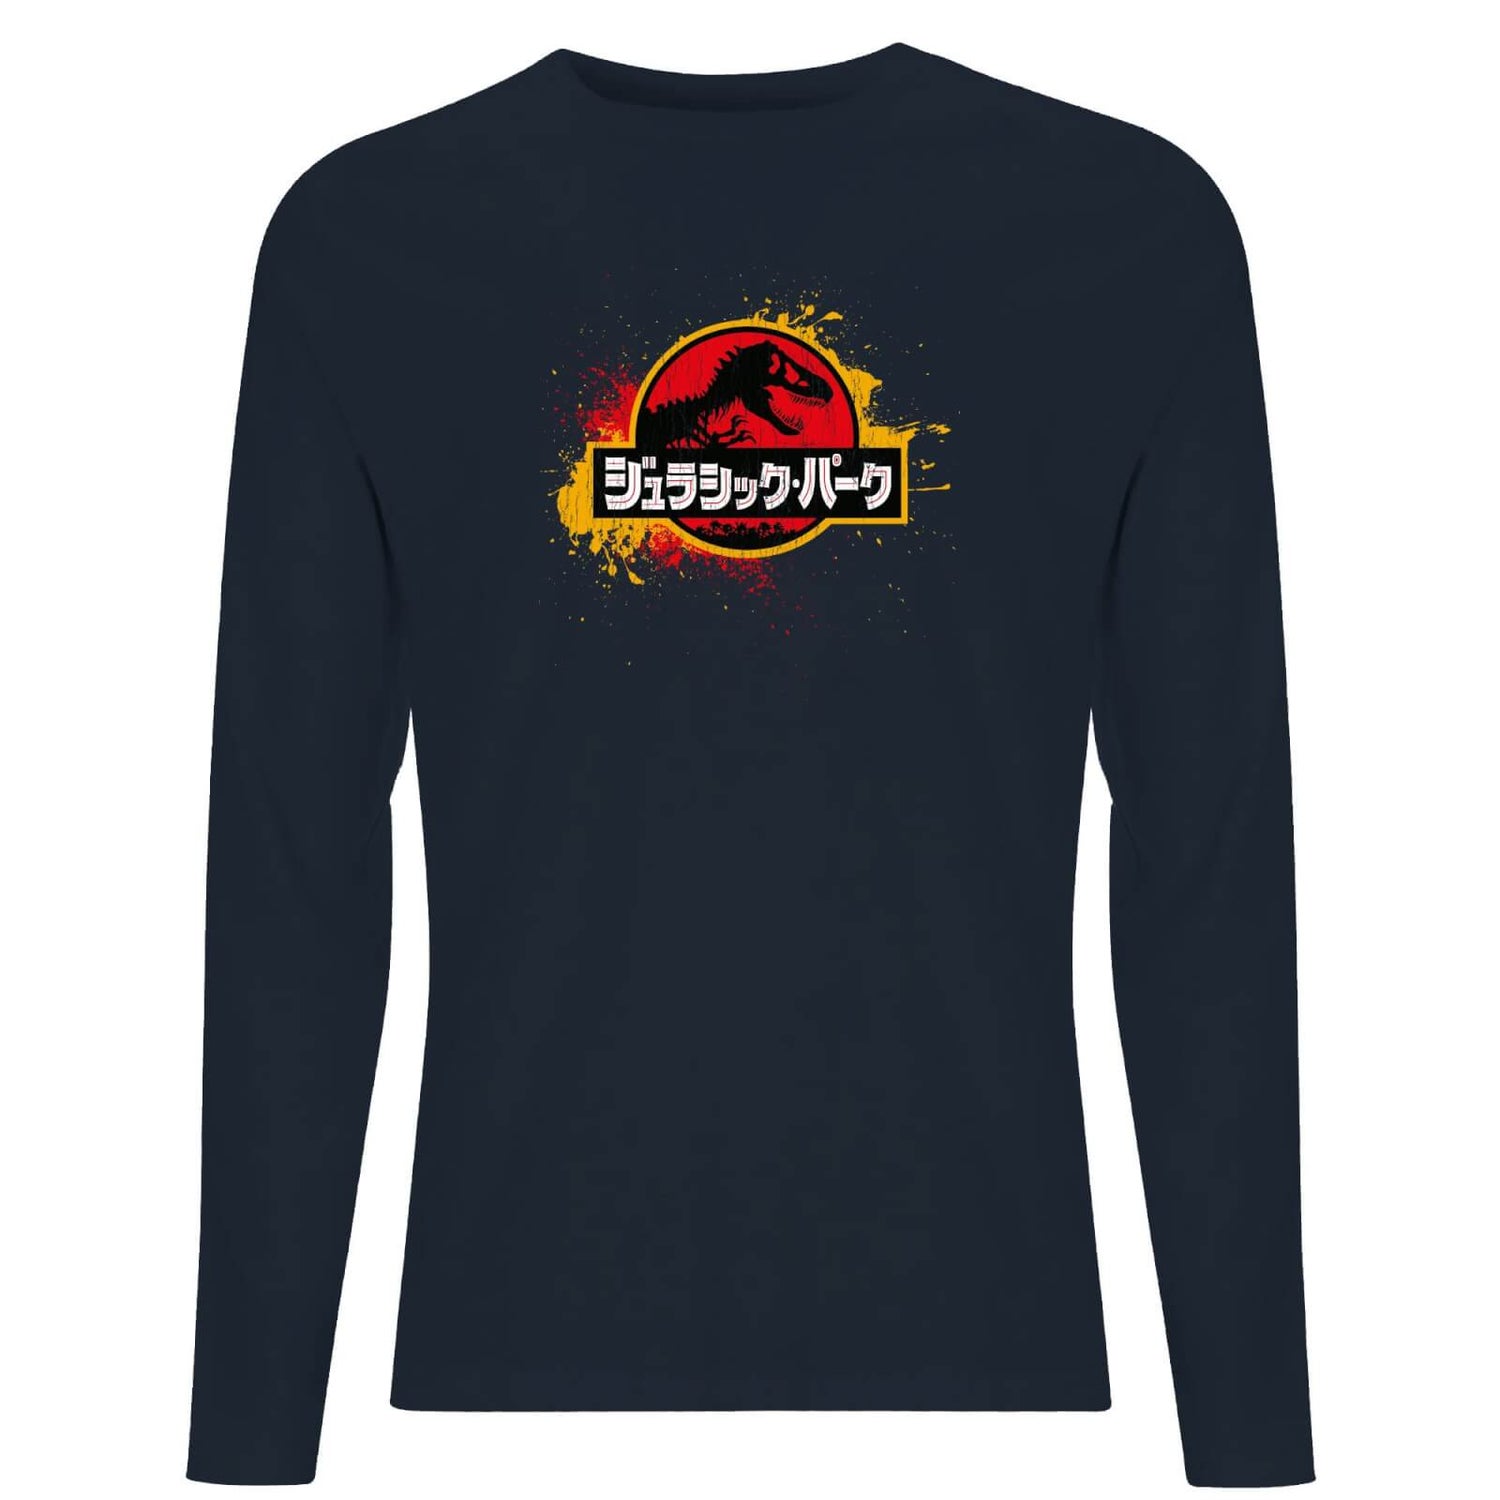 Camiseta de manga larga para hombre de Jurassic Park - Azul marino